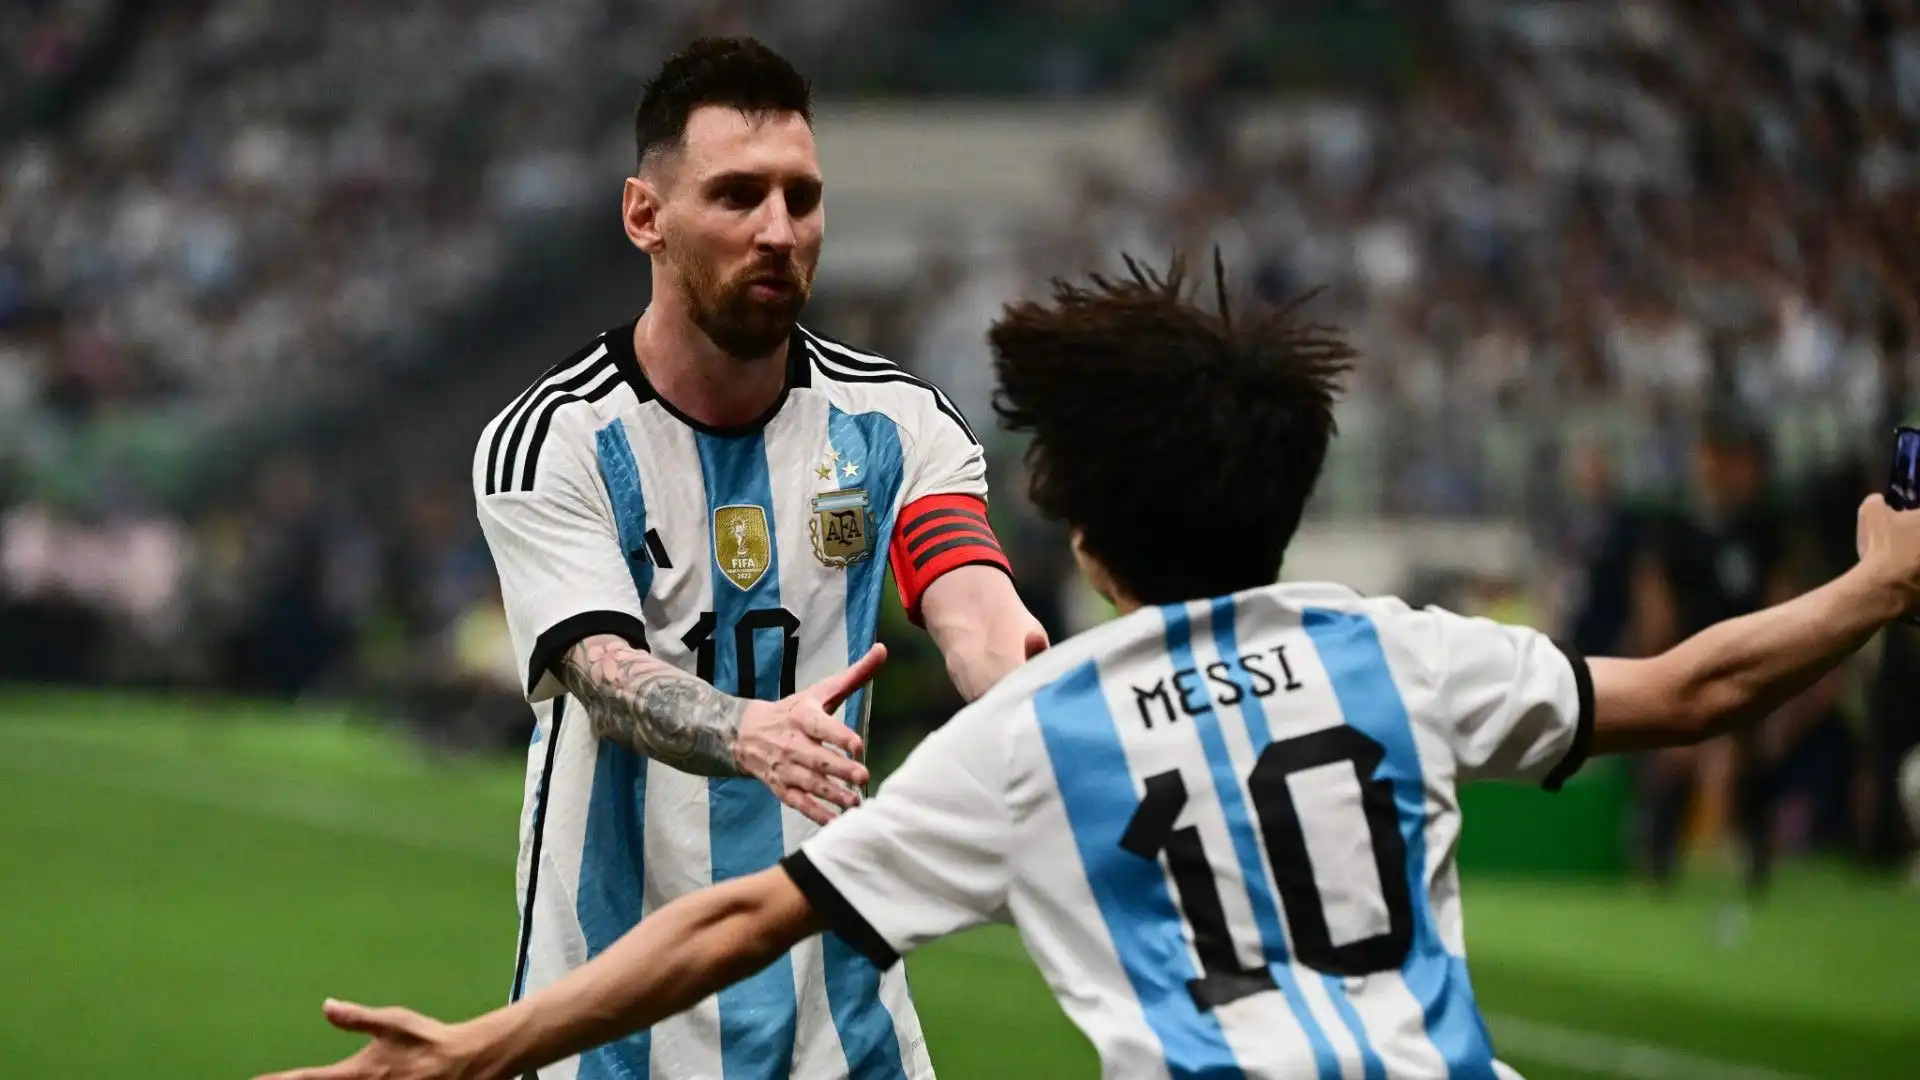 Durante l'amichevole Argentina-Australia, un giovane tifoso si è fiondato in campo